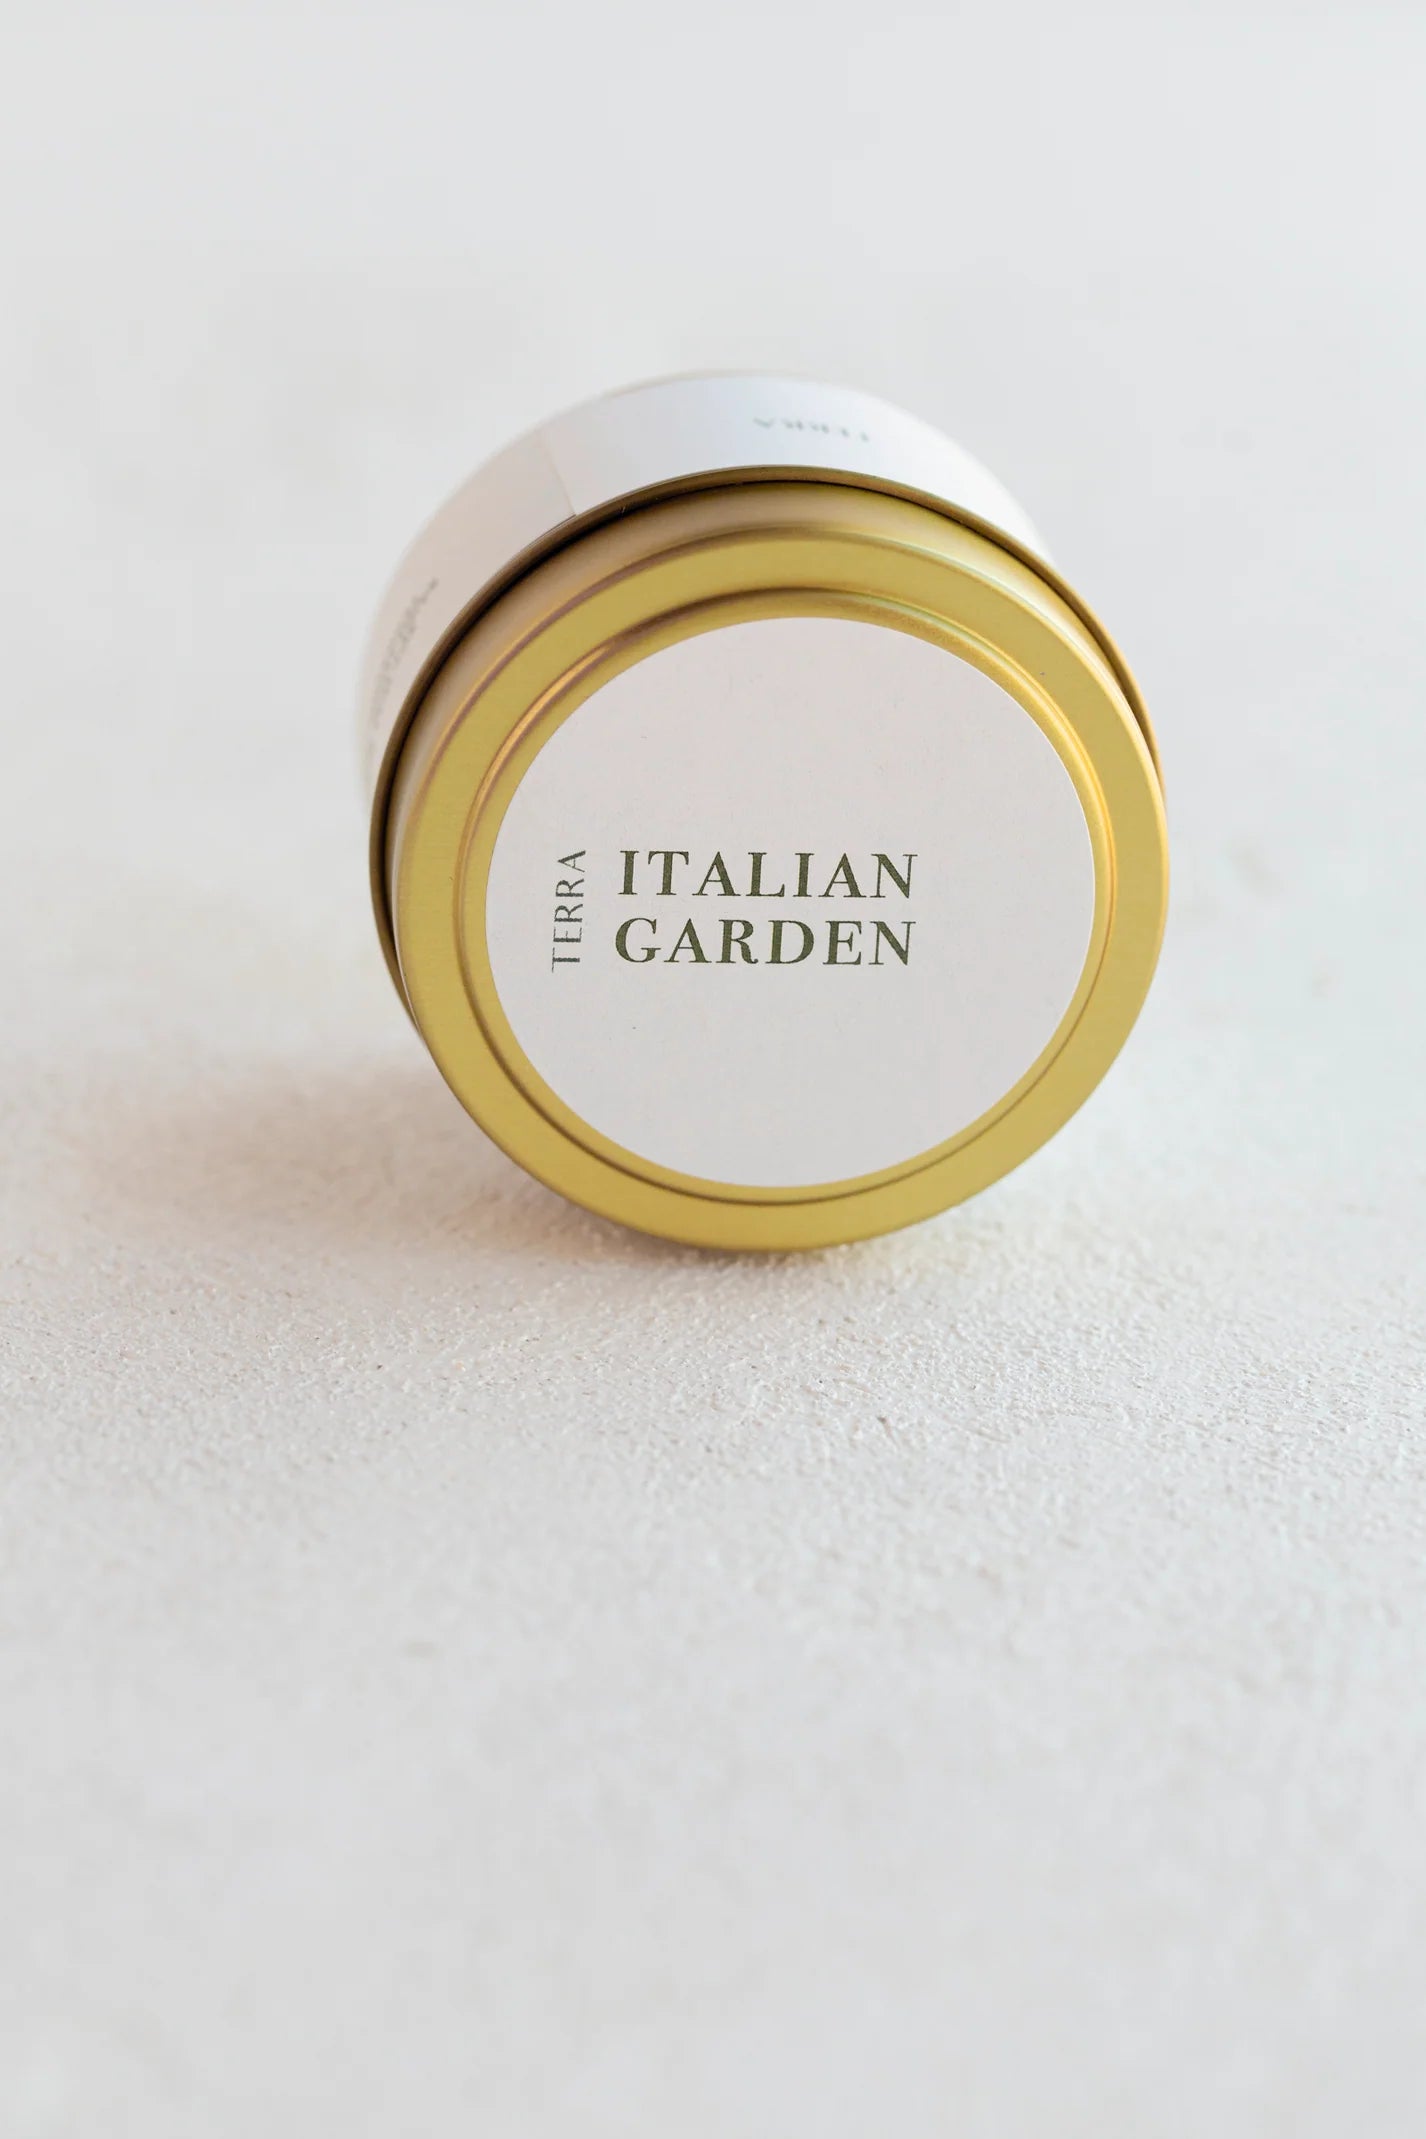 Italian Garden Candle | 4oz